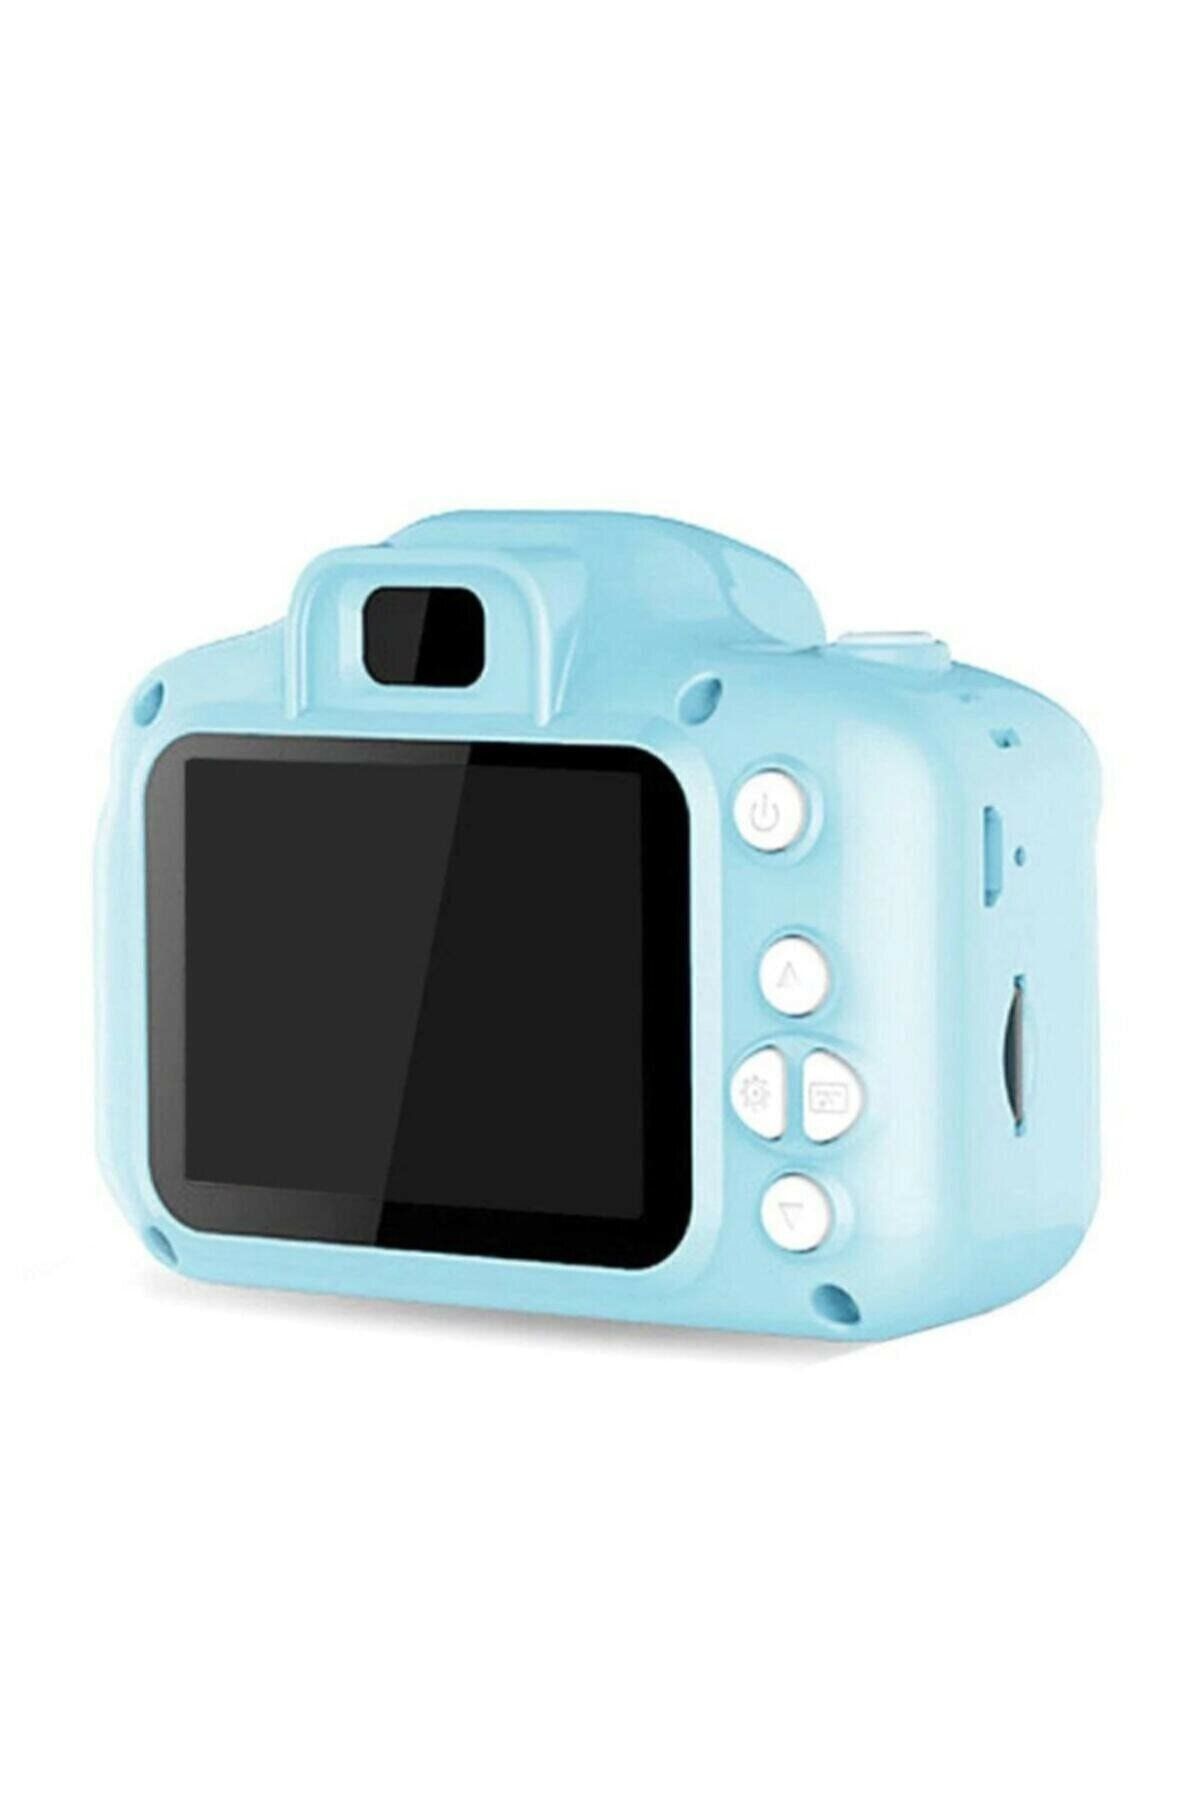 whitetech Mavi Renk Mini 1080p Hd Çocuk Kamera Dijital Fotoğraf Makinesi 2.0 Inç Ekran